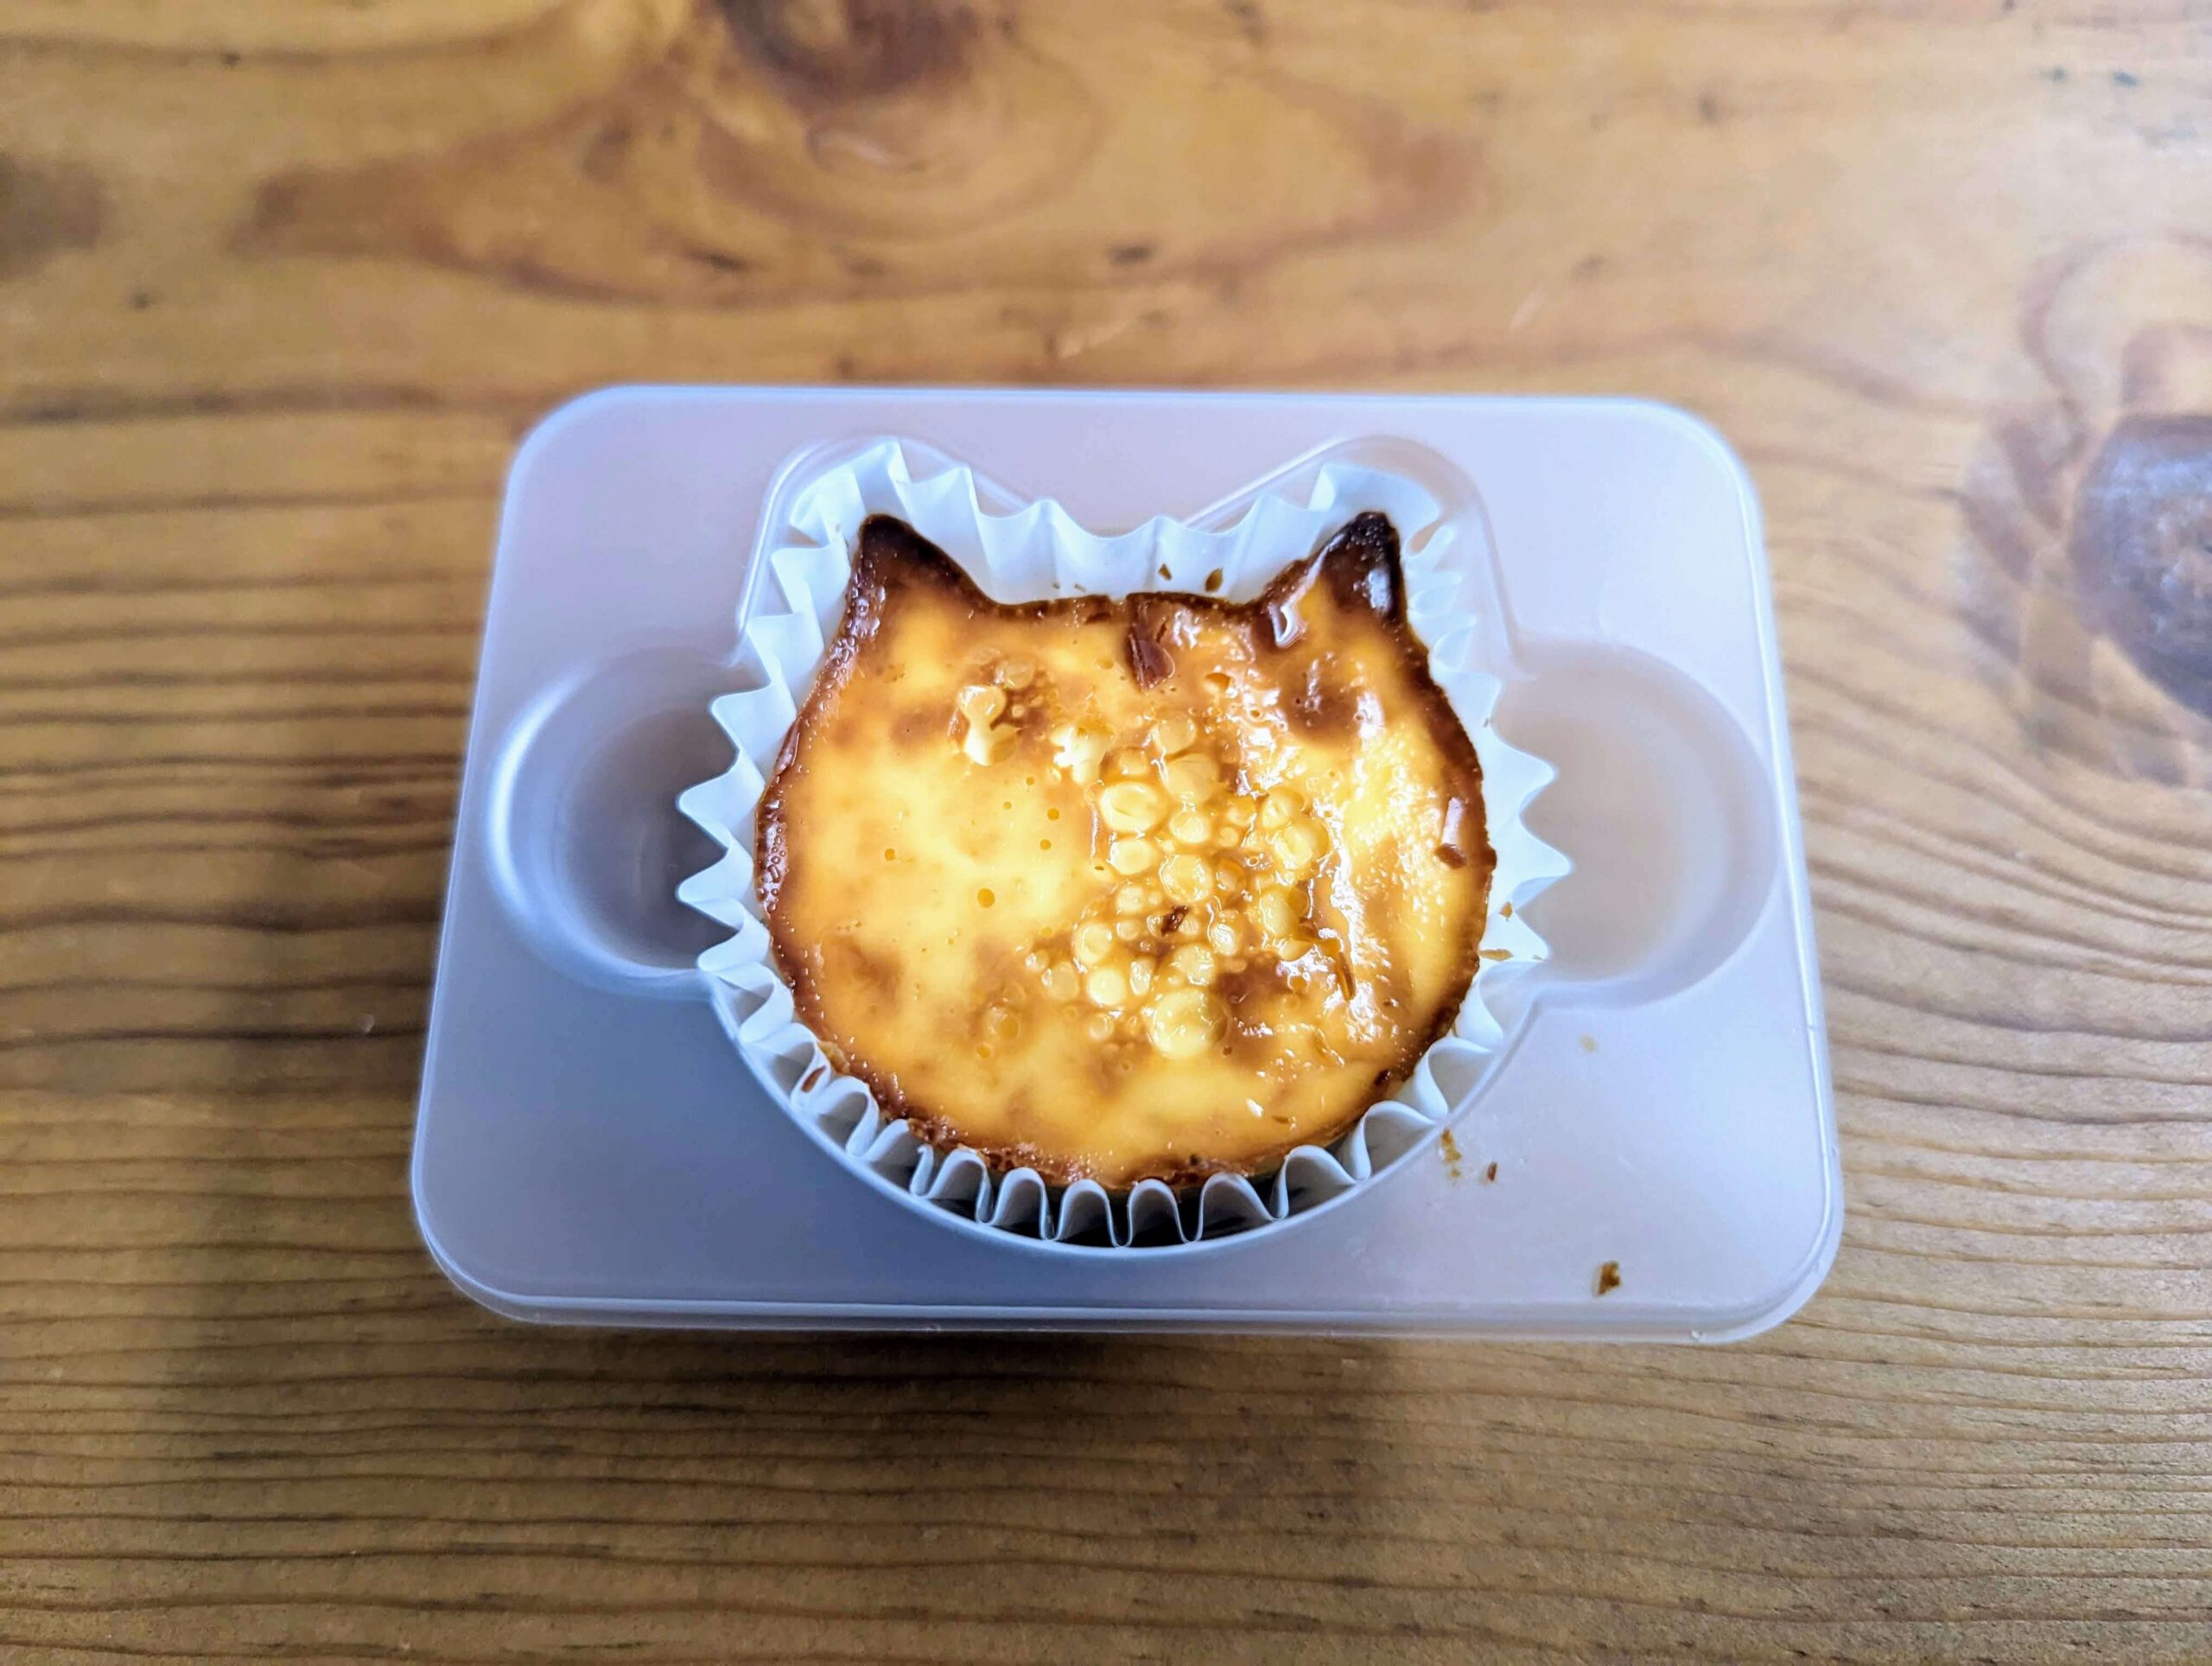 ファミリーマート「スプーンで食べる にゃんともおいしいベイクドチーズケーキ」 (8)